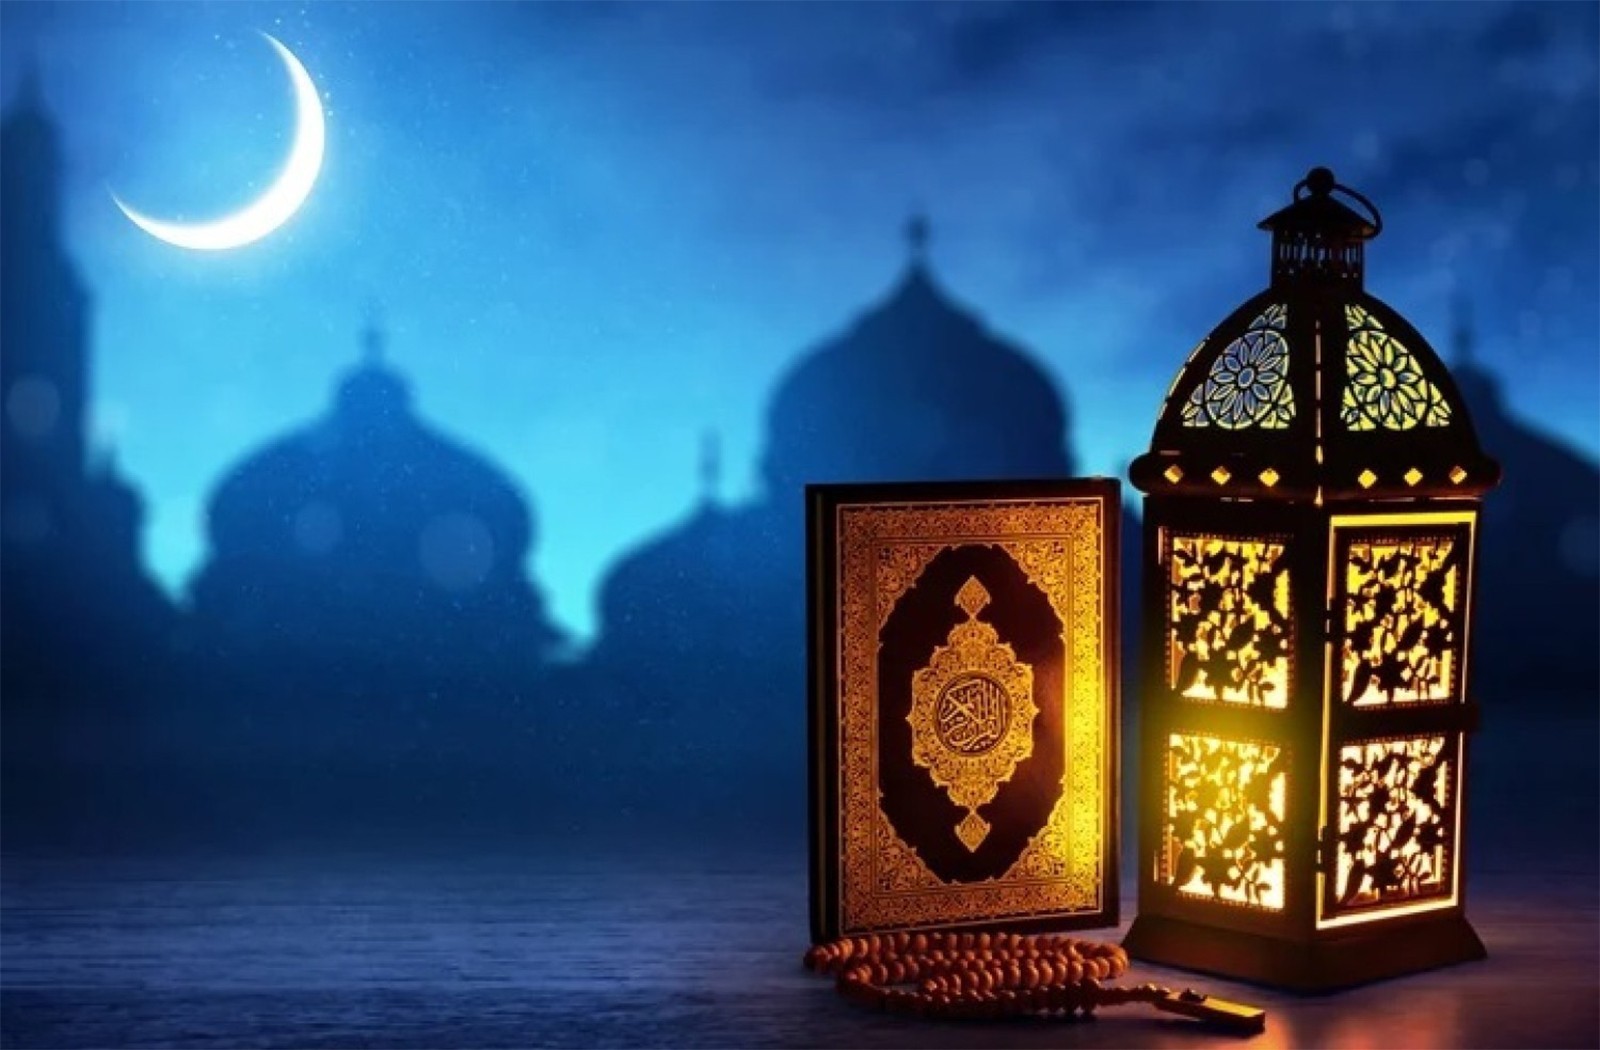 دعاء عقد نية الصيام اللهم إني نويت أن أصوم رمضان كاملاً لوجهك الكريم